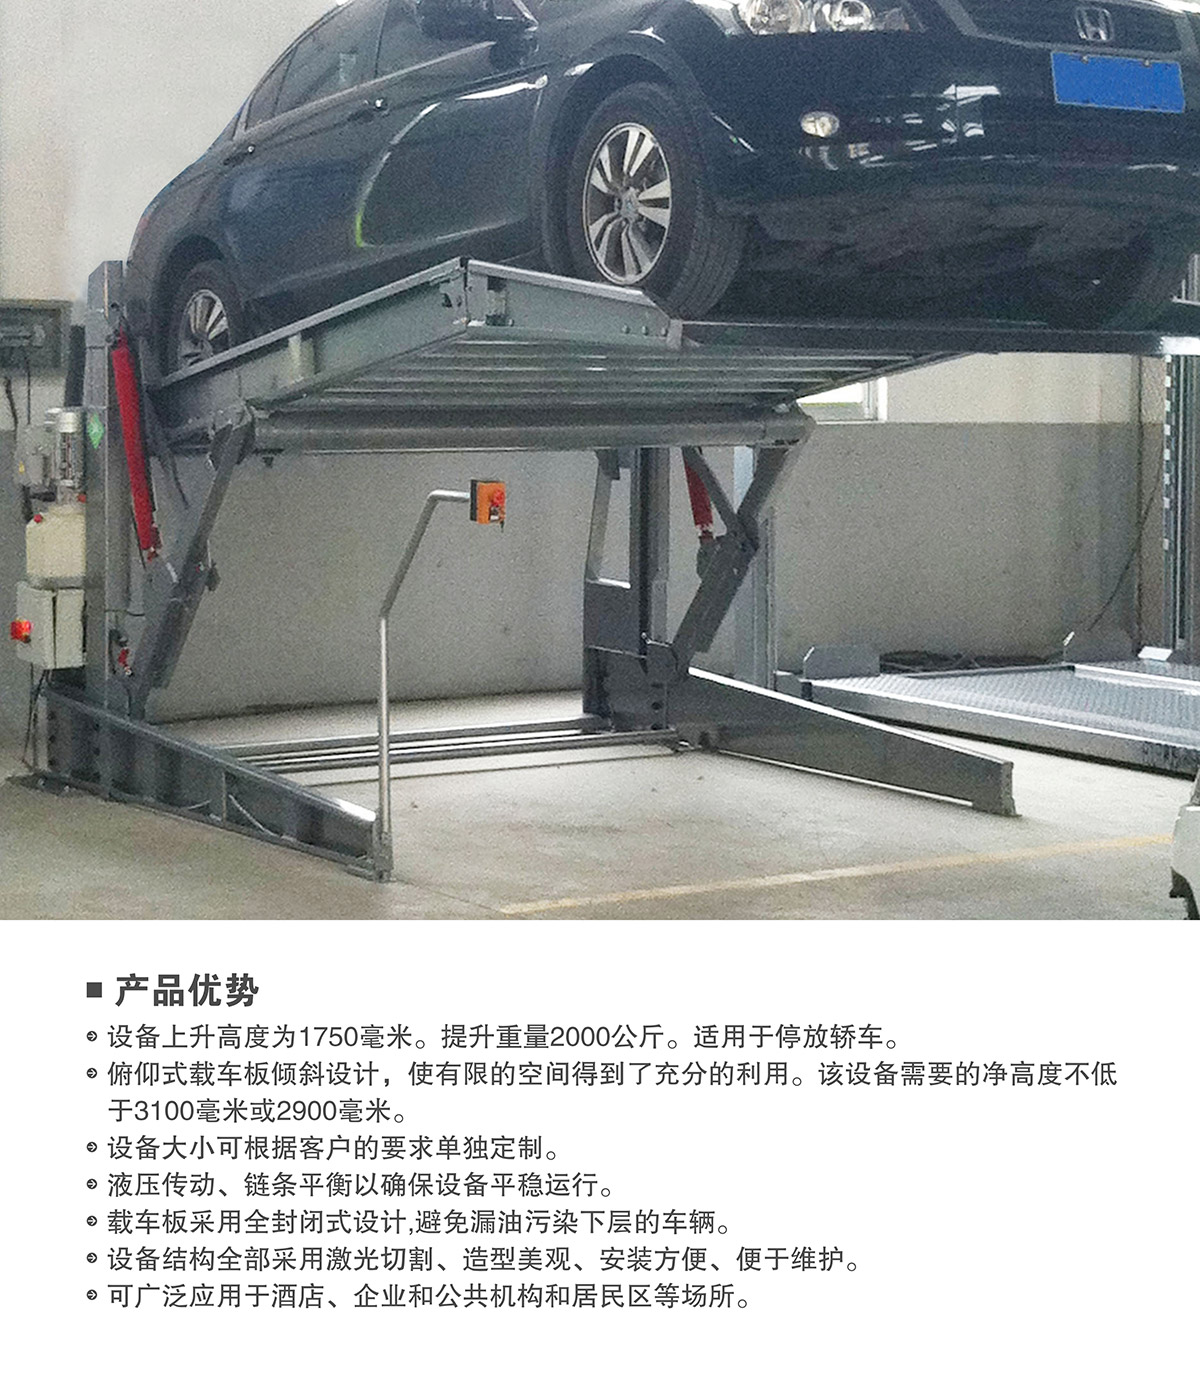 立体停车库09俯仰式简易升降机械立体停车产品优势.jpg